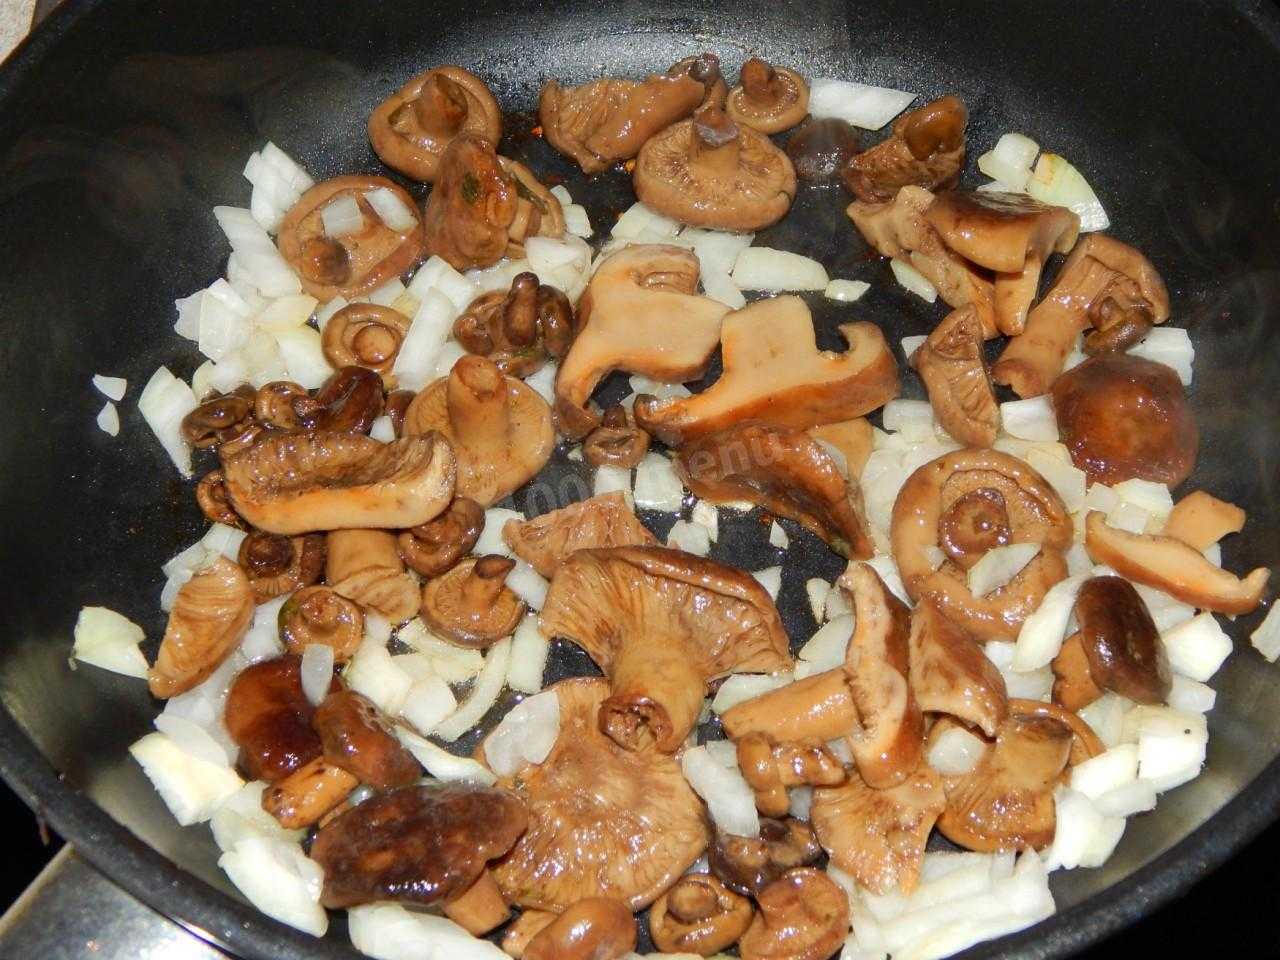 Как приготовить грибы рыжики: лучшие рецепты приготовления с картошкой или в сметане, правила обработки